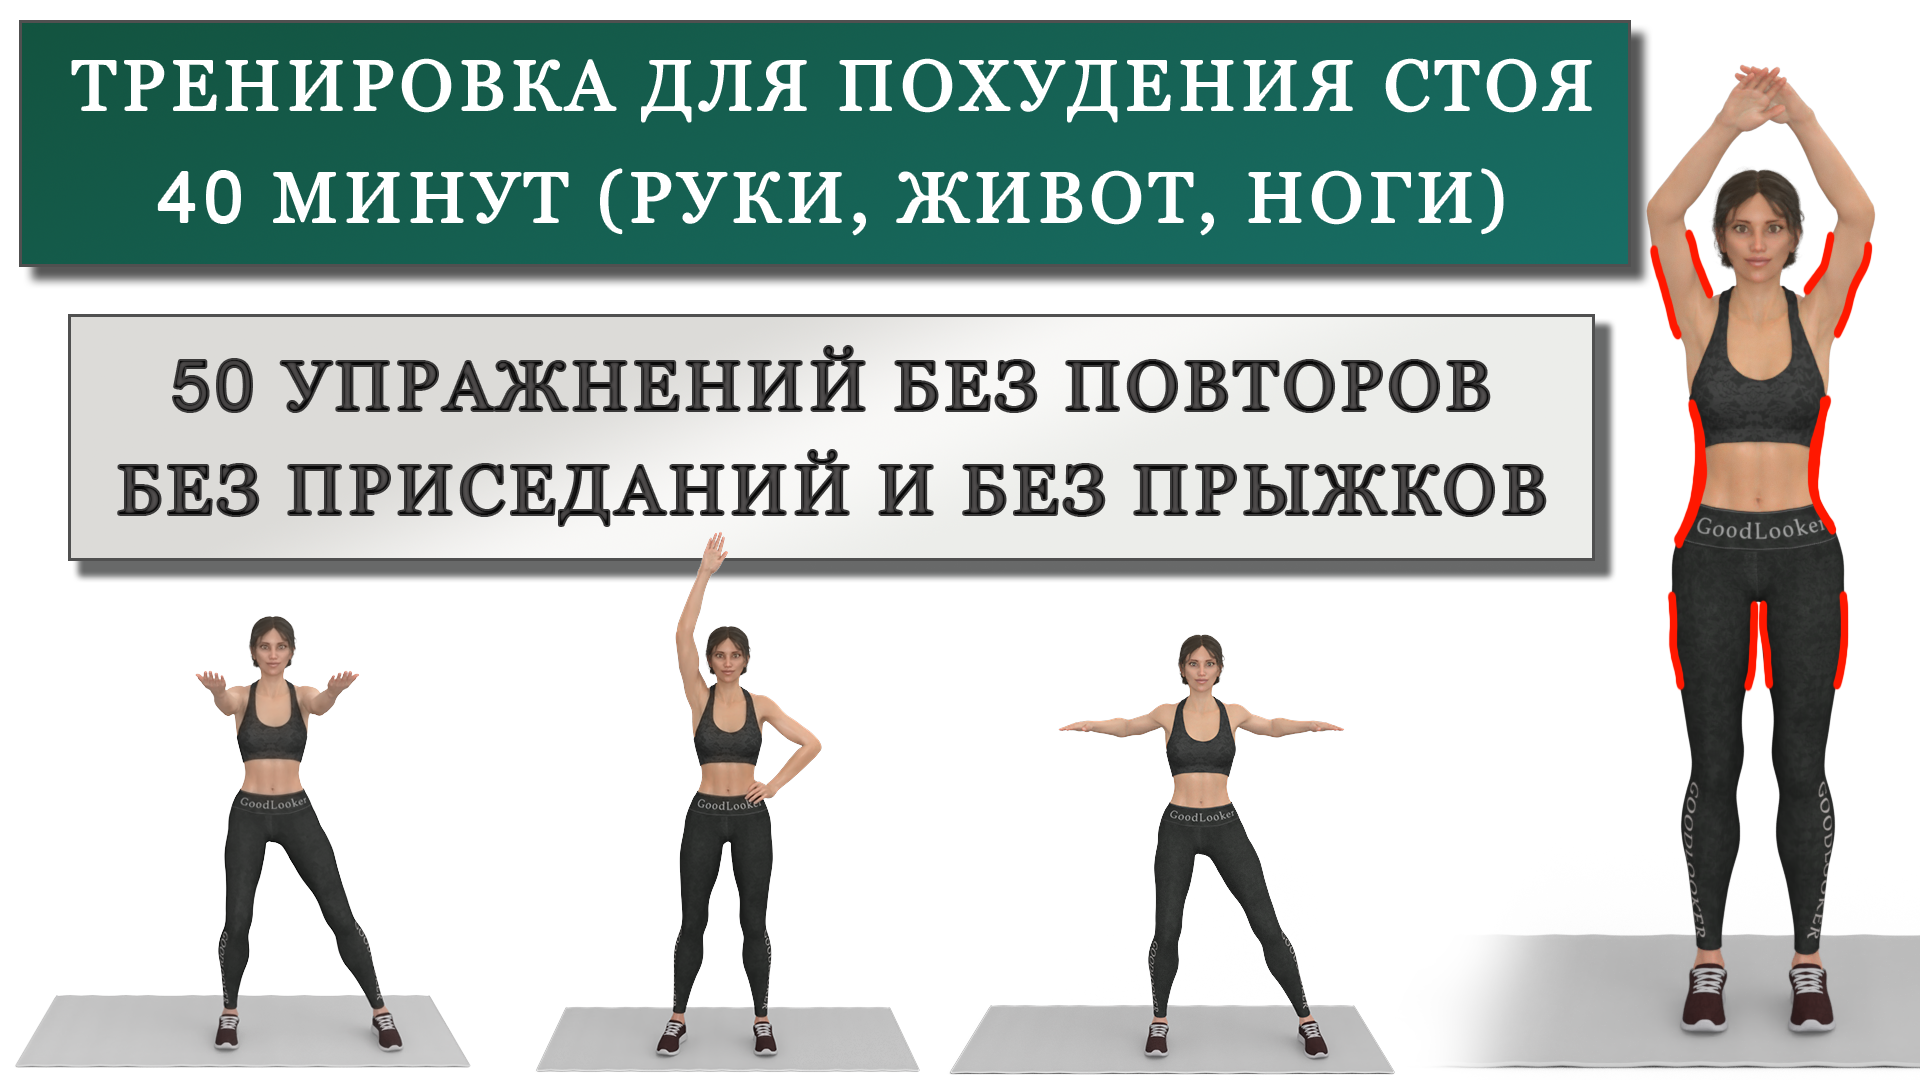 Зарядка стоя 10 минут. Упражнения для похудения стоя. Жиросжигающая тренировка. Жиросжигающая тренировка стоя для всего тела. Стоячие упражнения для похудения.